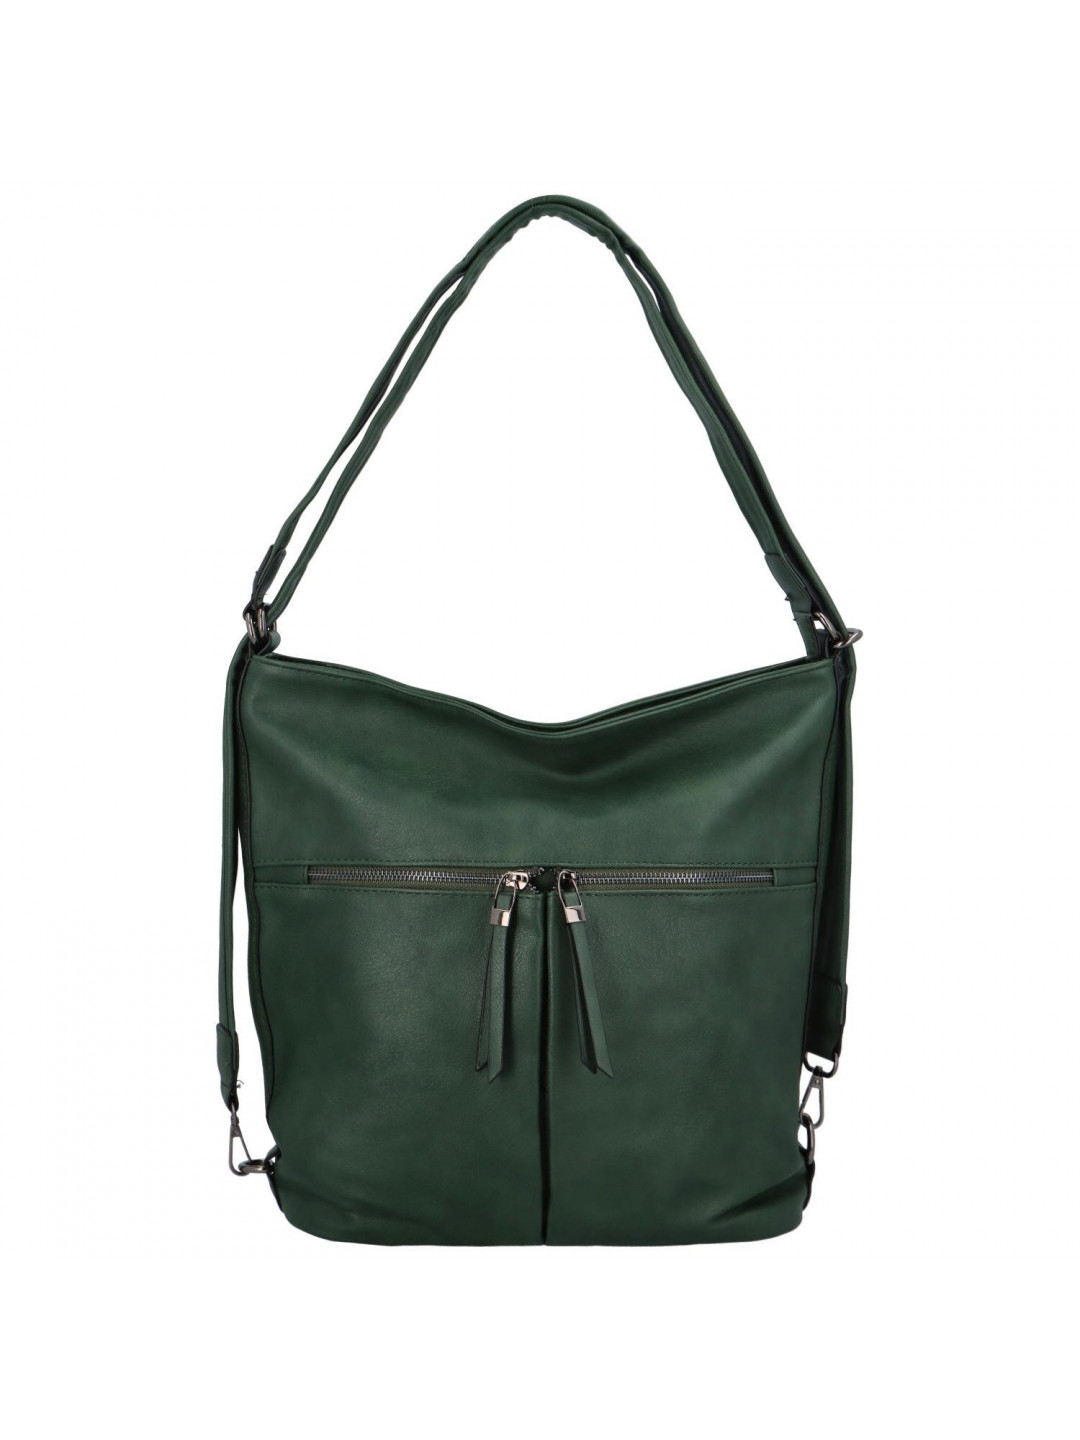 Dámská koženková kabelka-batoh zelená – Romina Geria